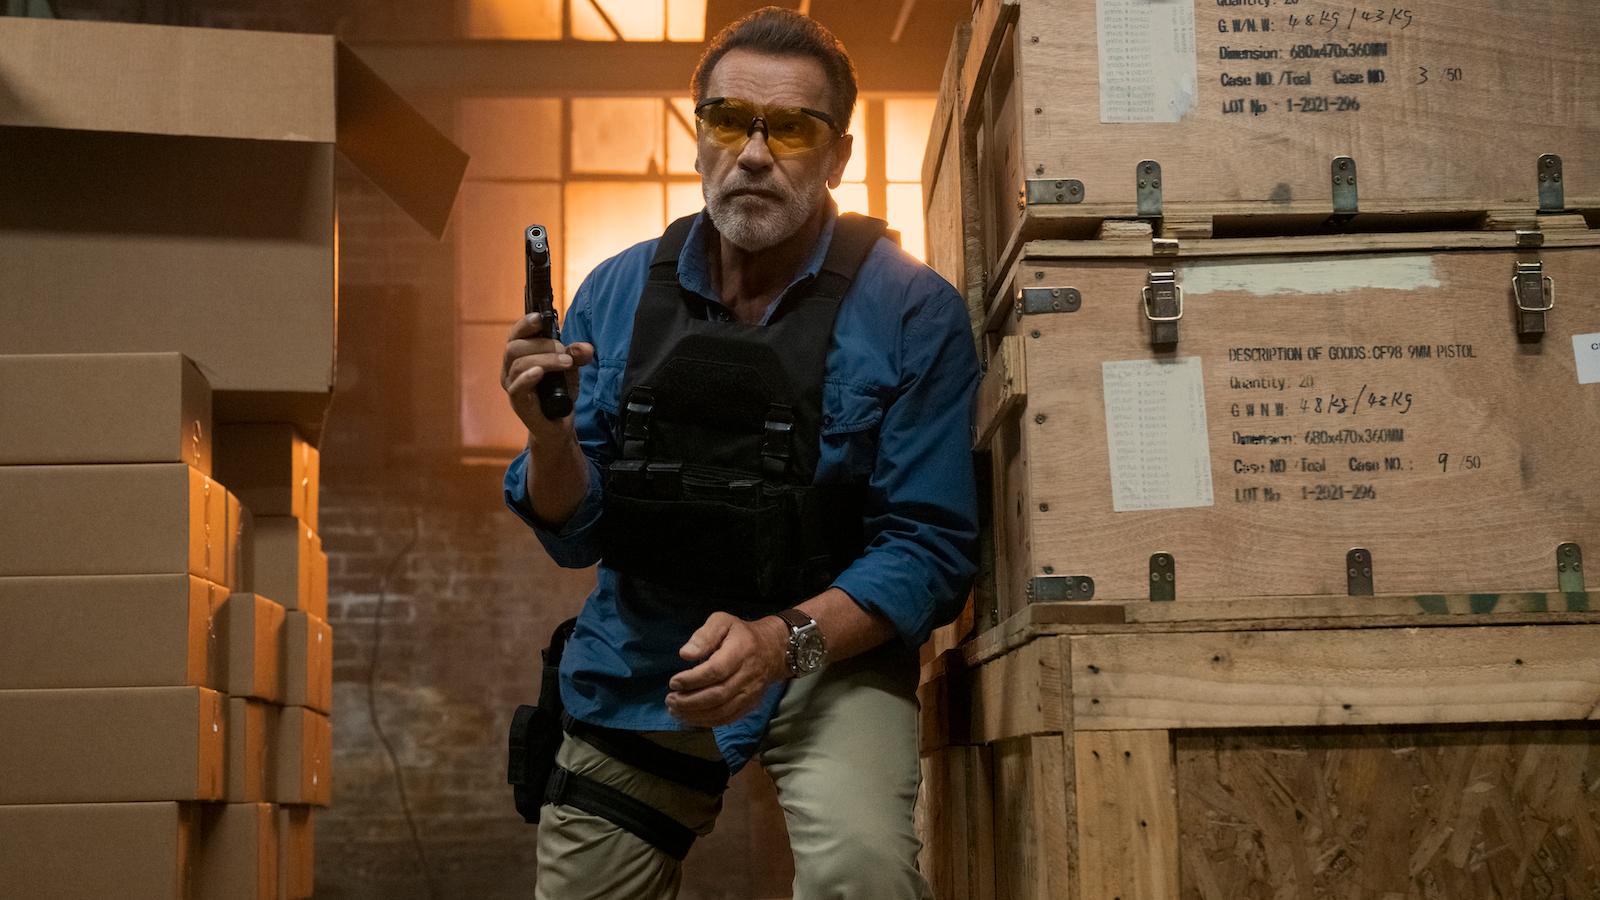 Arnold Schwarzenegger as Luke Brunner in FUBAR on Netflix